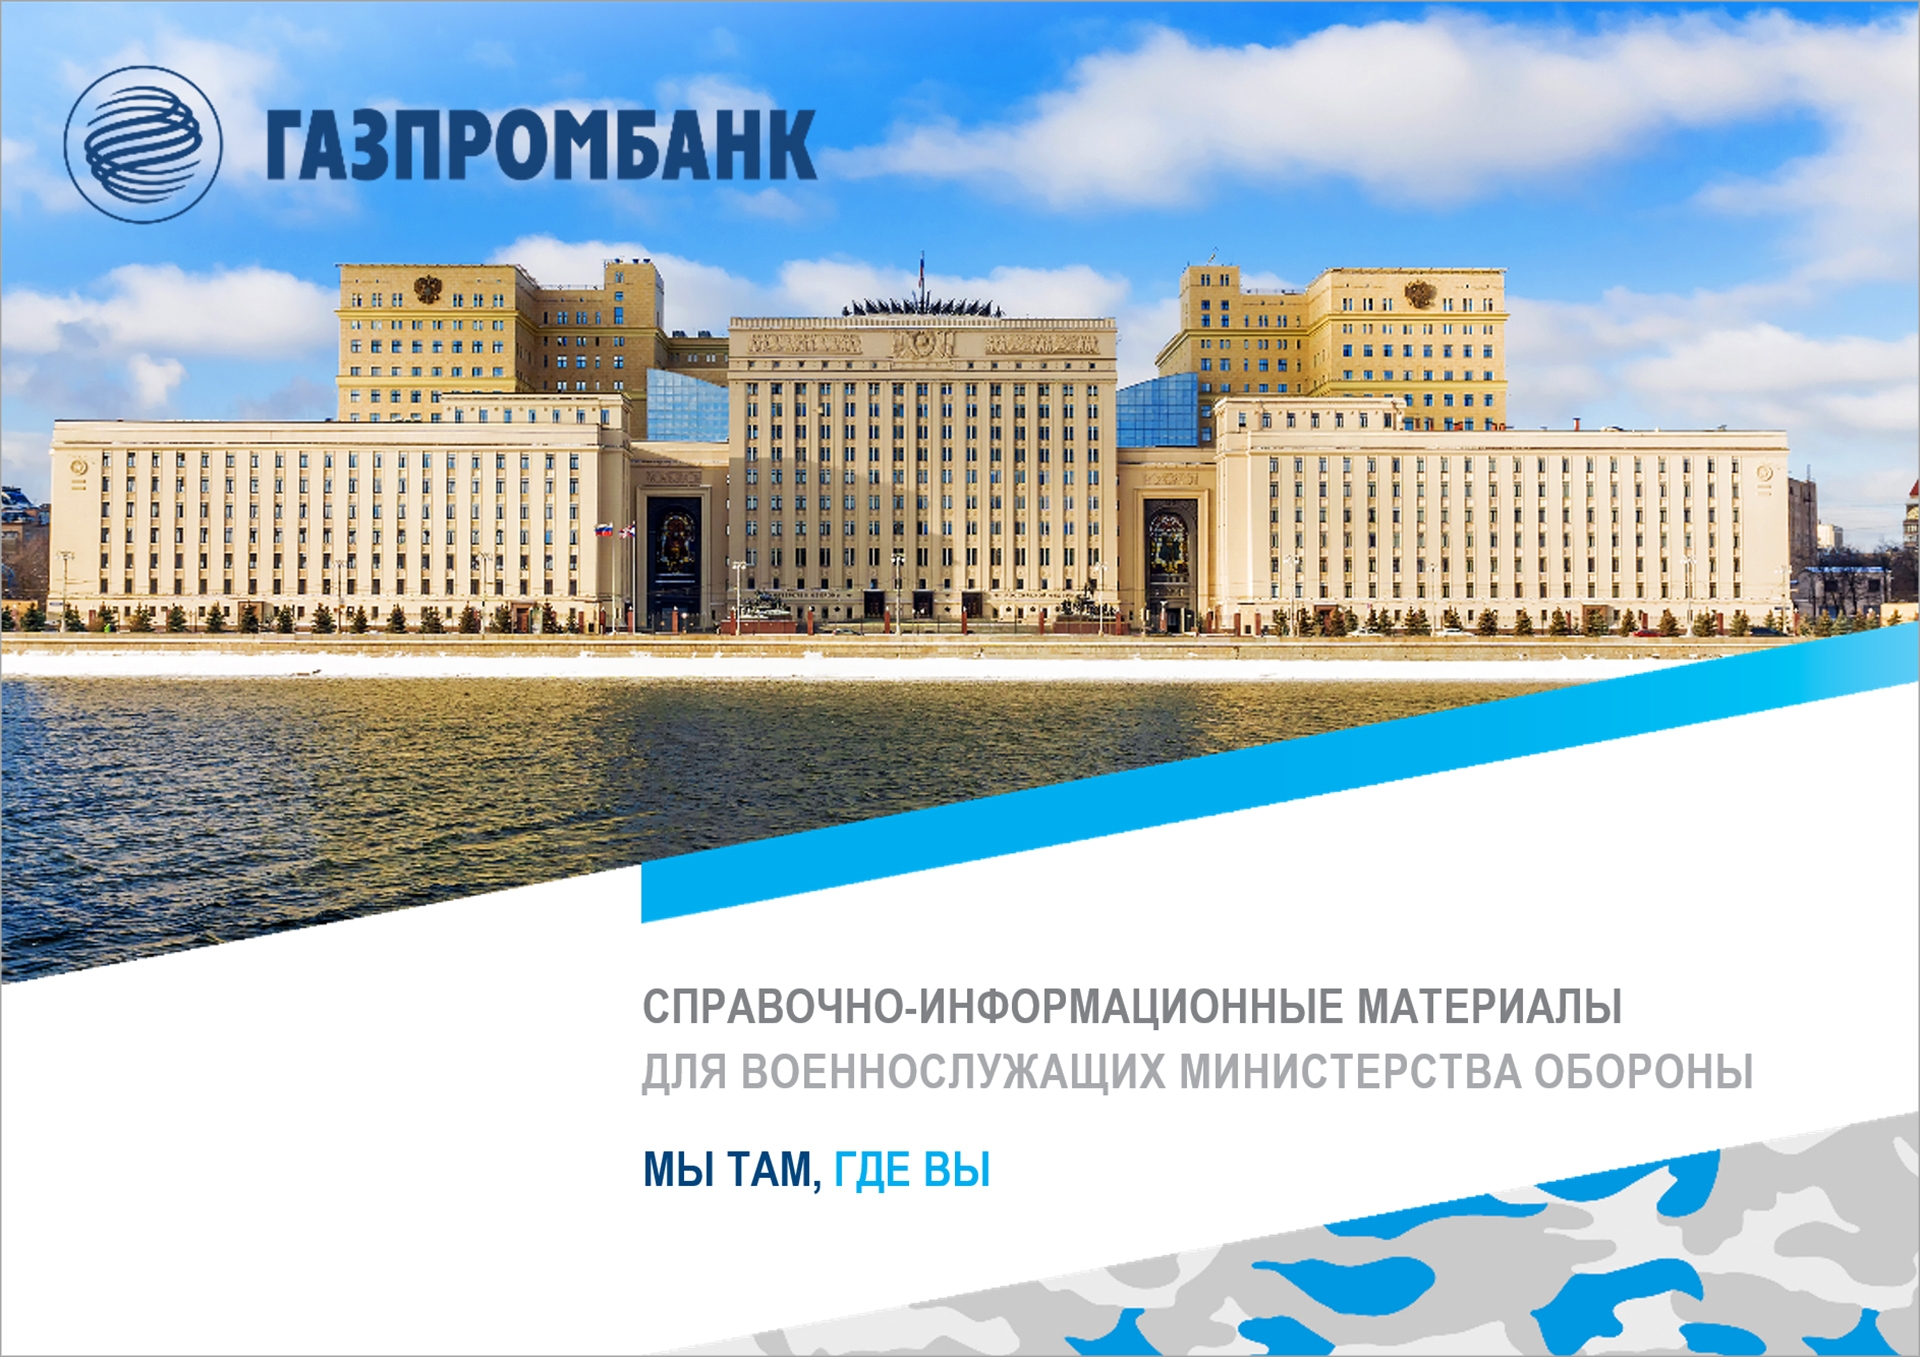 Газпромбанк - Презентация для военнослужащих Министерства обороны